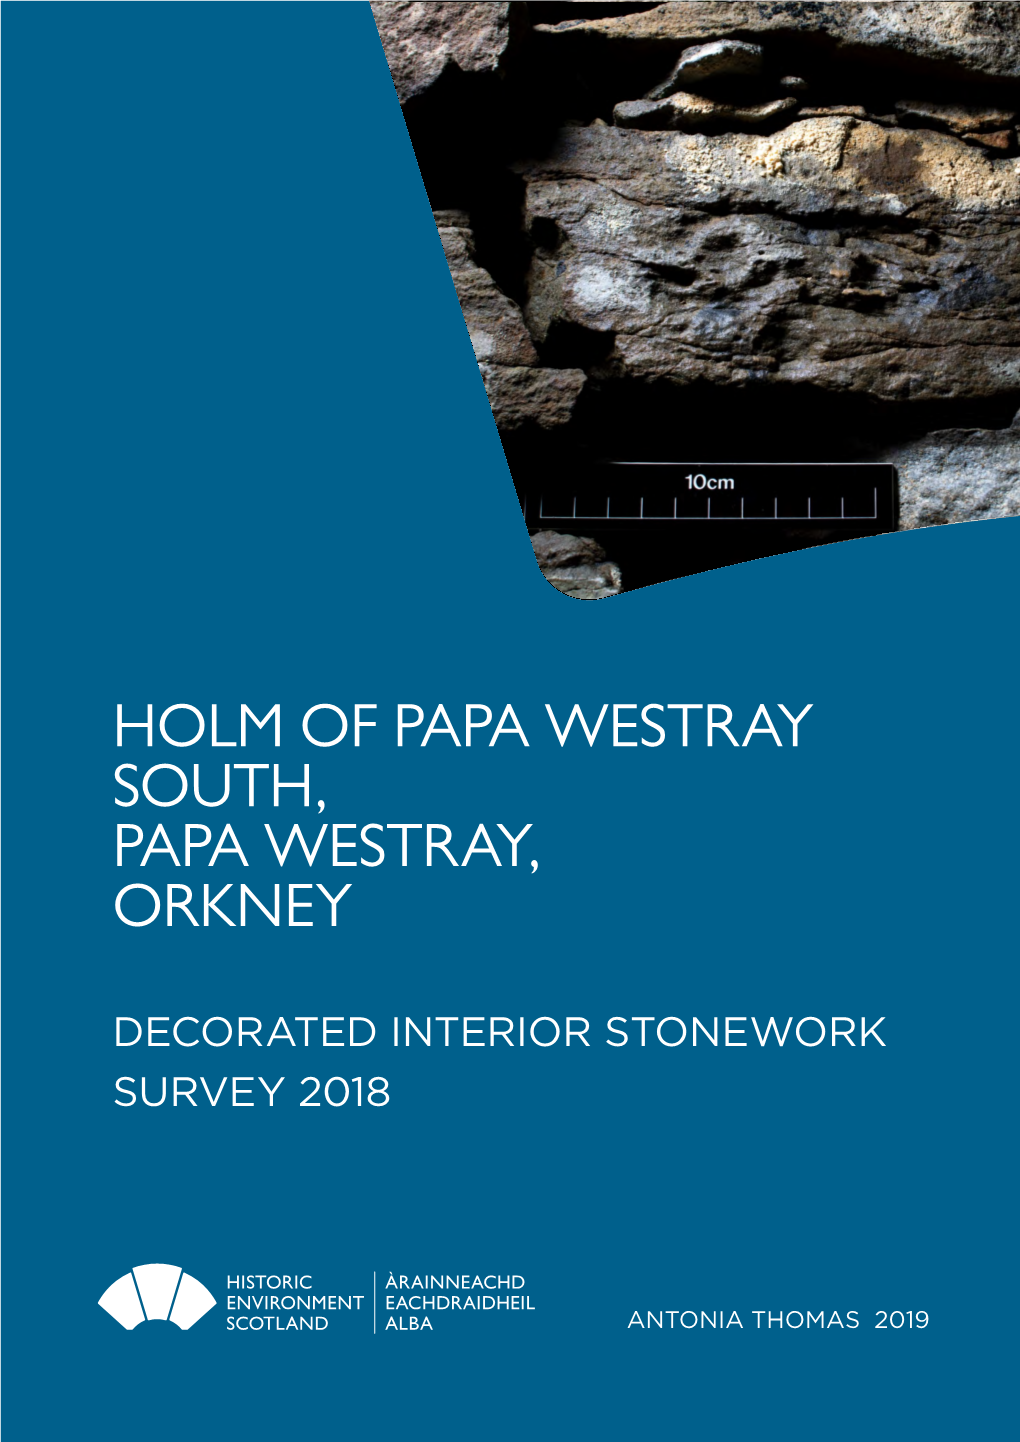 The Holm of Papa Westray Stonework Survey 2018